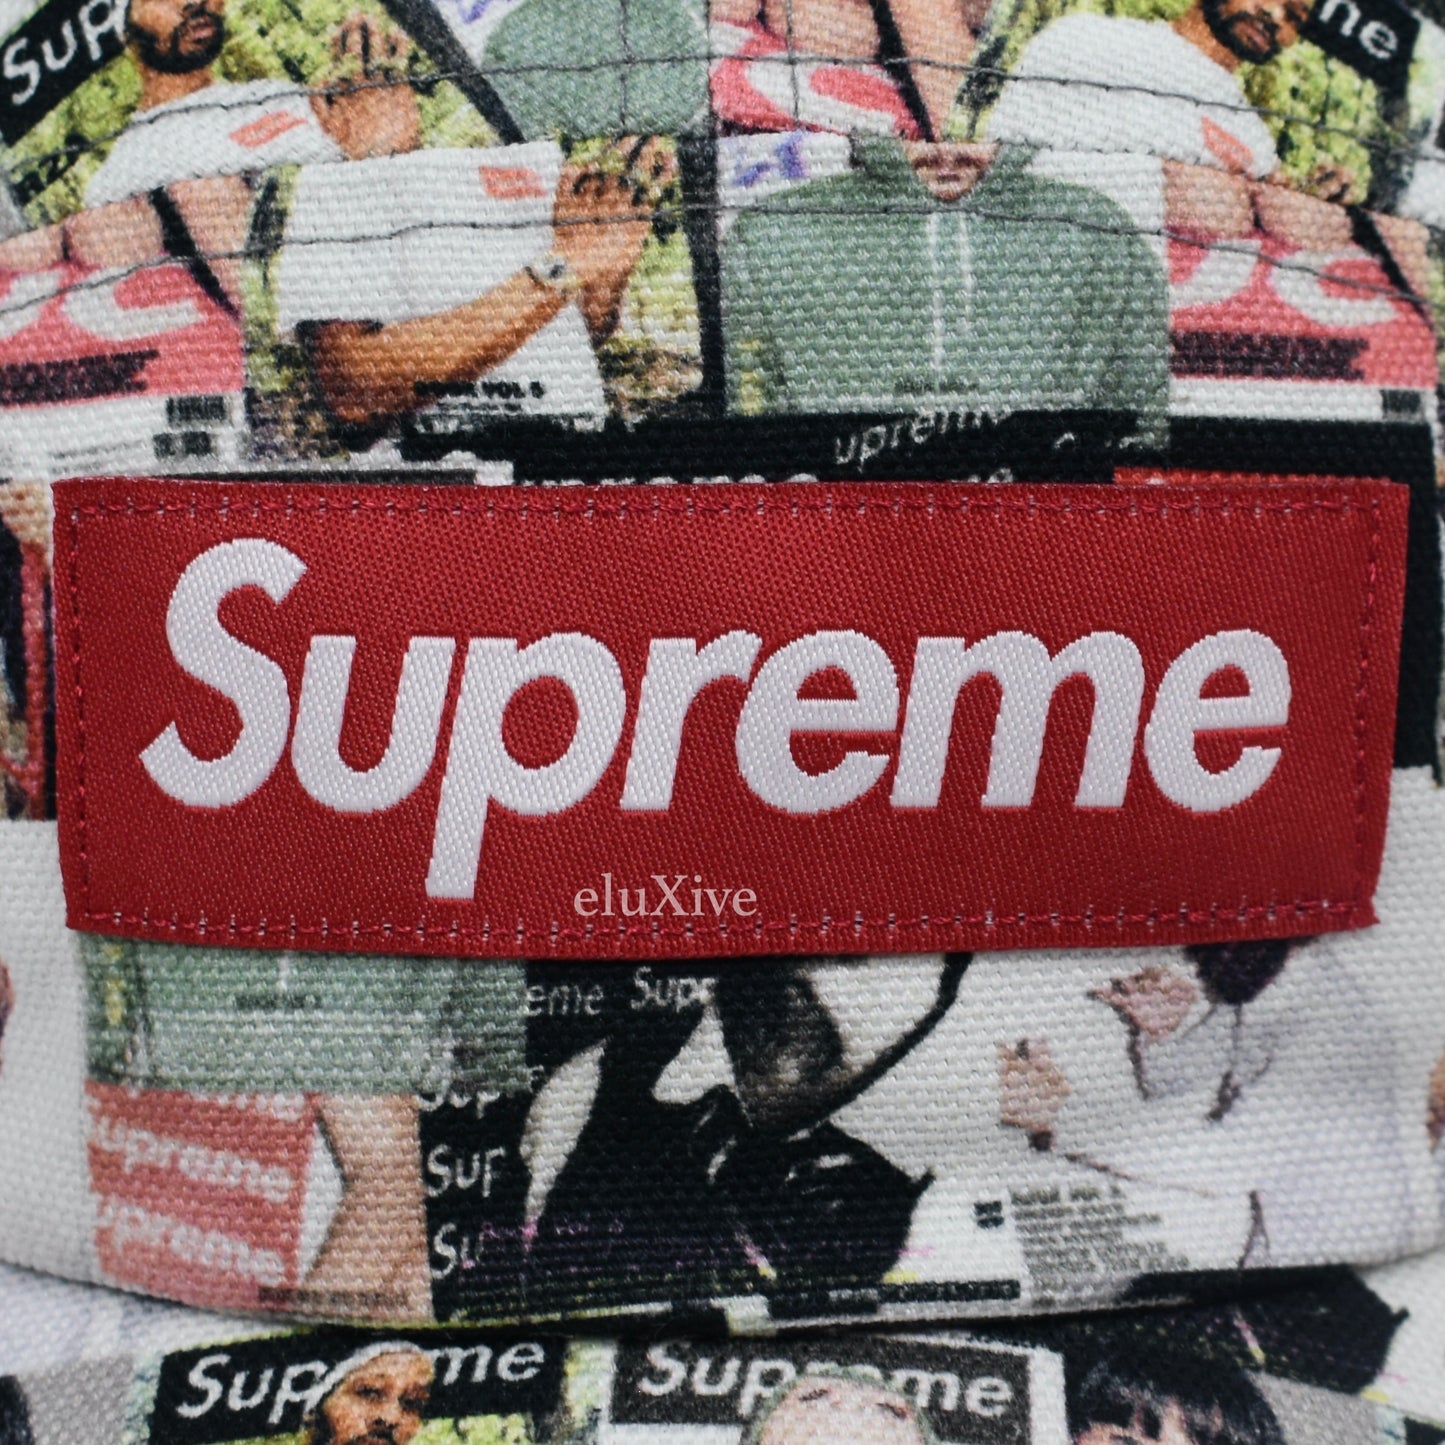 Supreme - Magazine Print Box Logo Hat